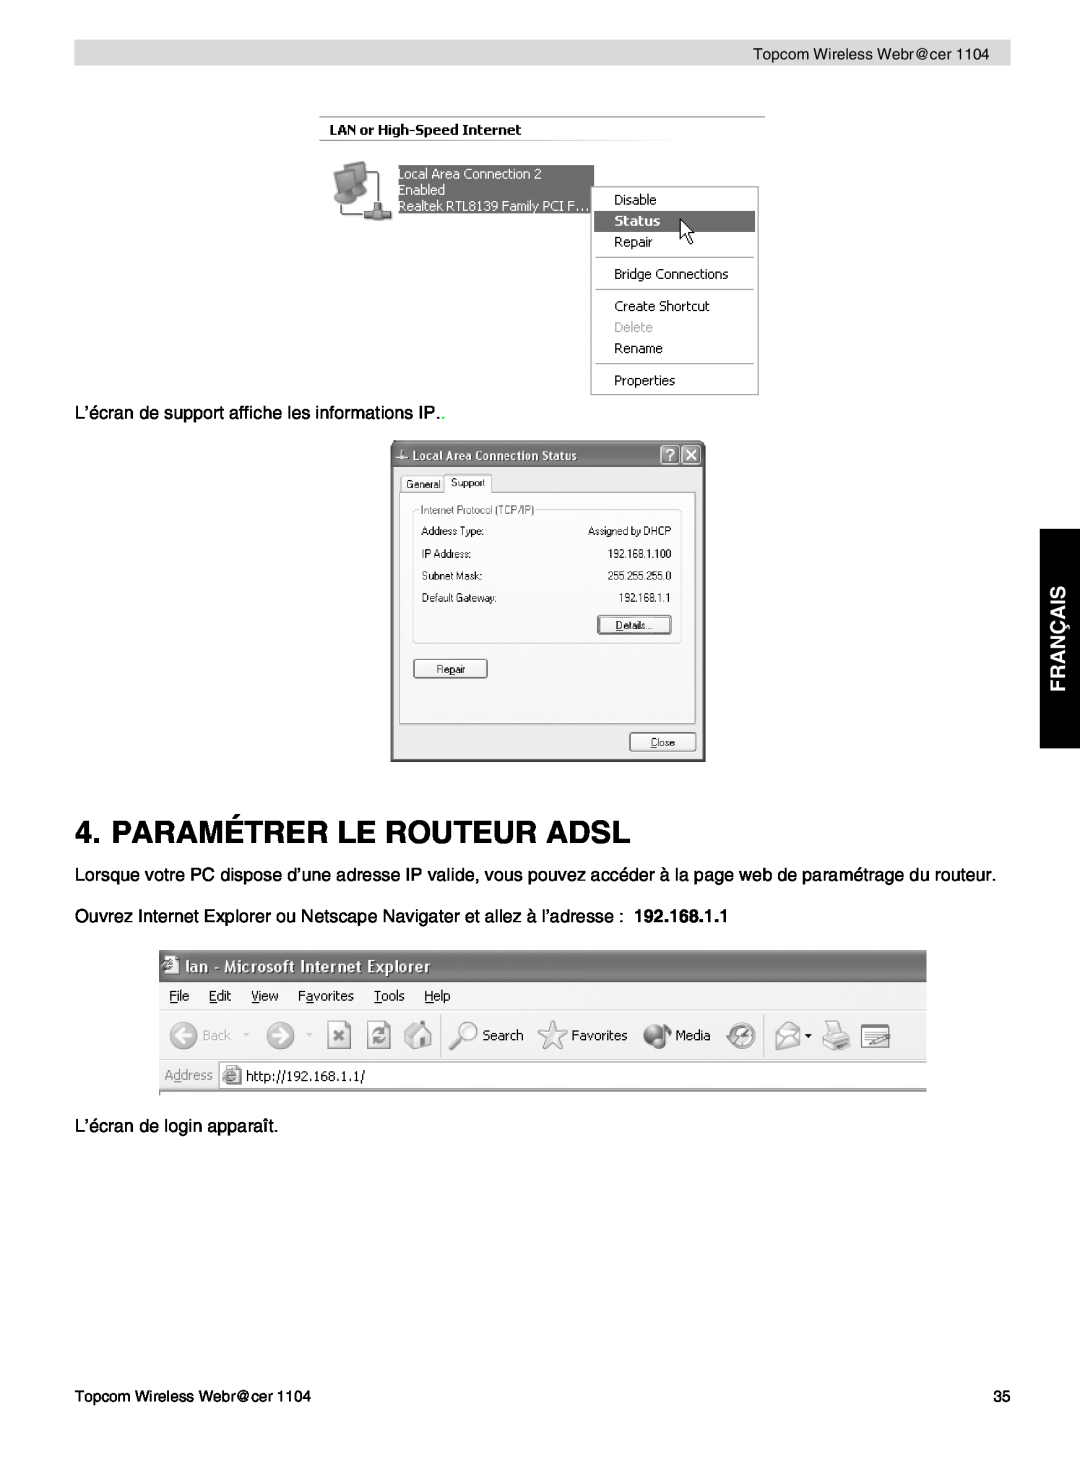 Topcom 1104 manual do utilizador Paramétrer Le Routeur Adsl, Français, L’écran de support affiche les informations IP 